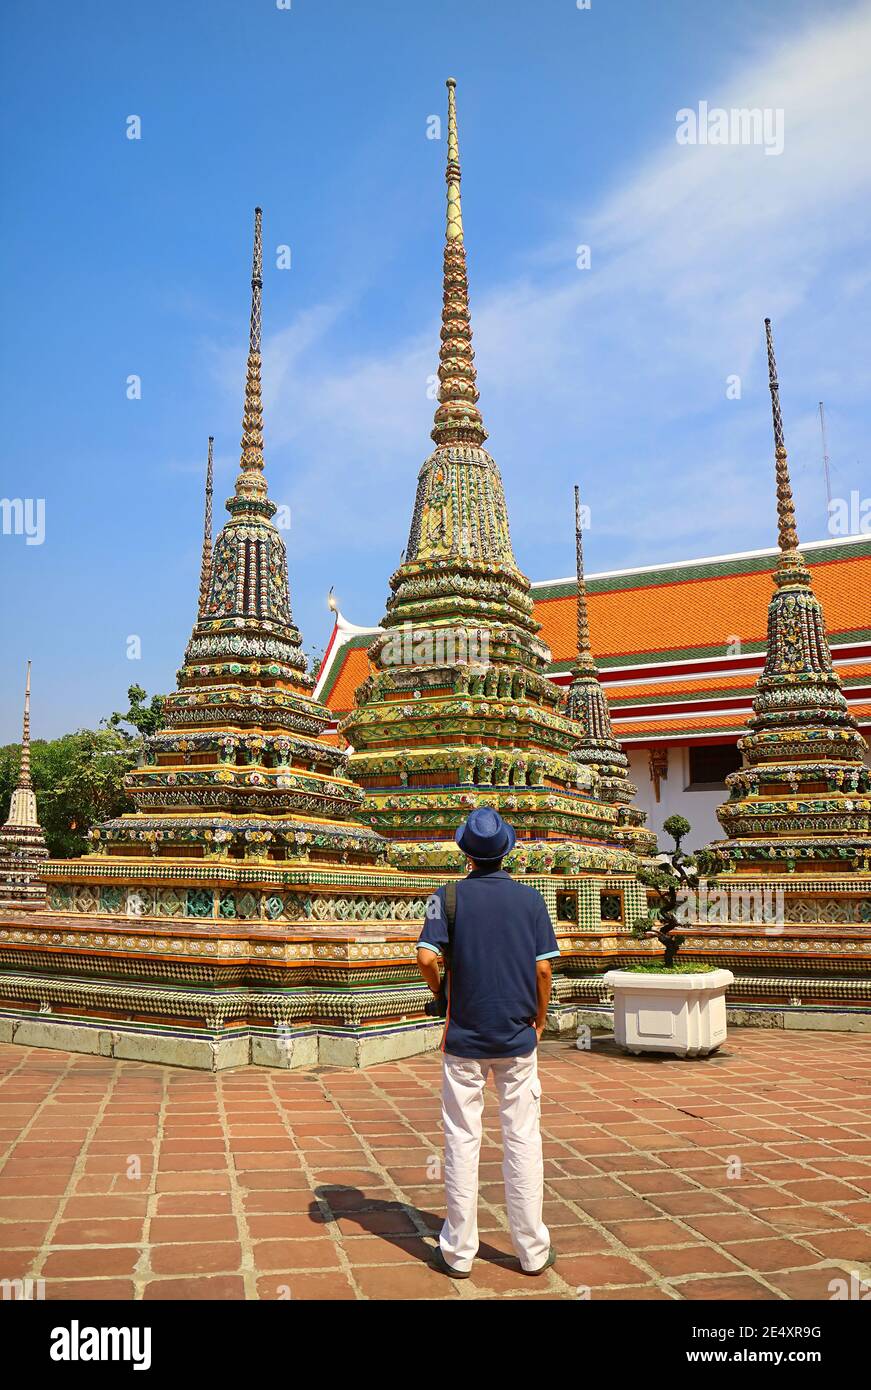 Visitante impresionado por el Grupo de Pagodas en Wat Pho o Templo del Buda Reclining, Bangkok, Tailandia Foto de stock